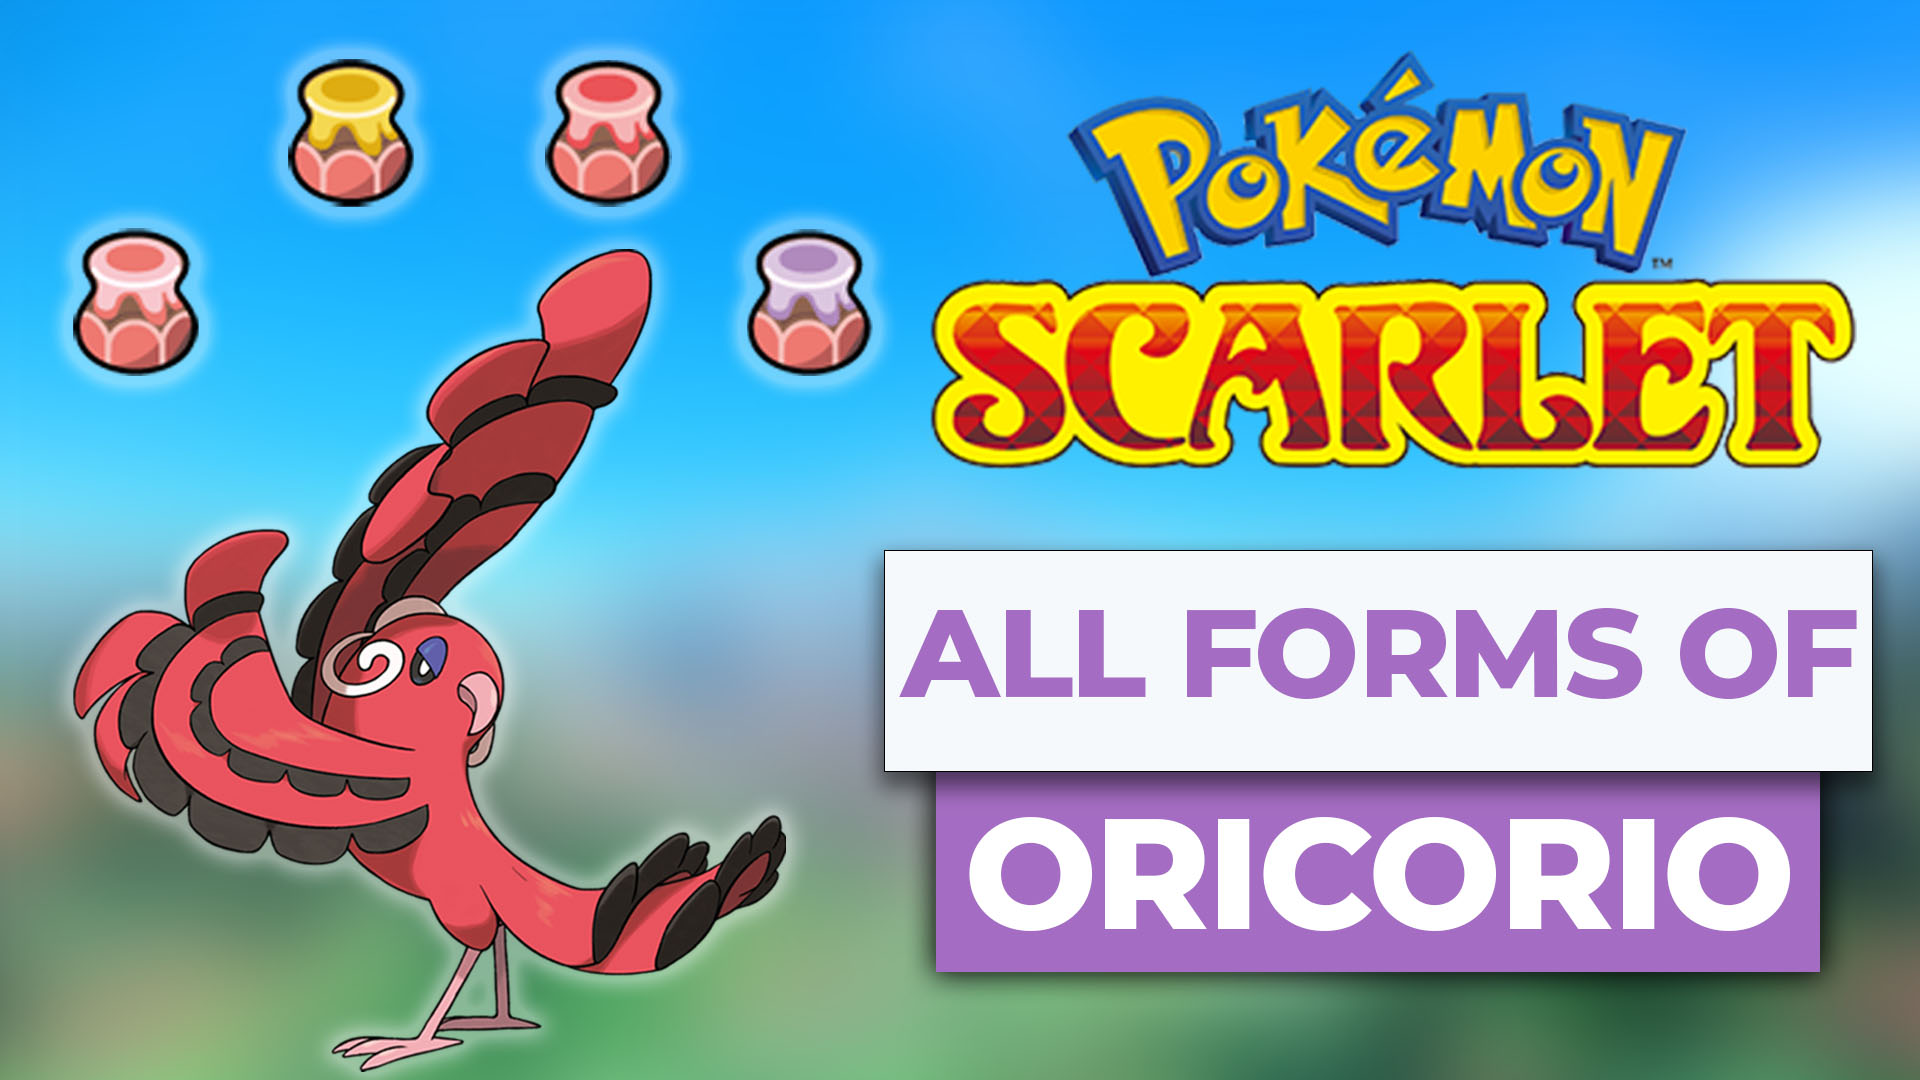 Oricorio pokemon scarlet